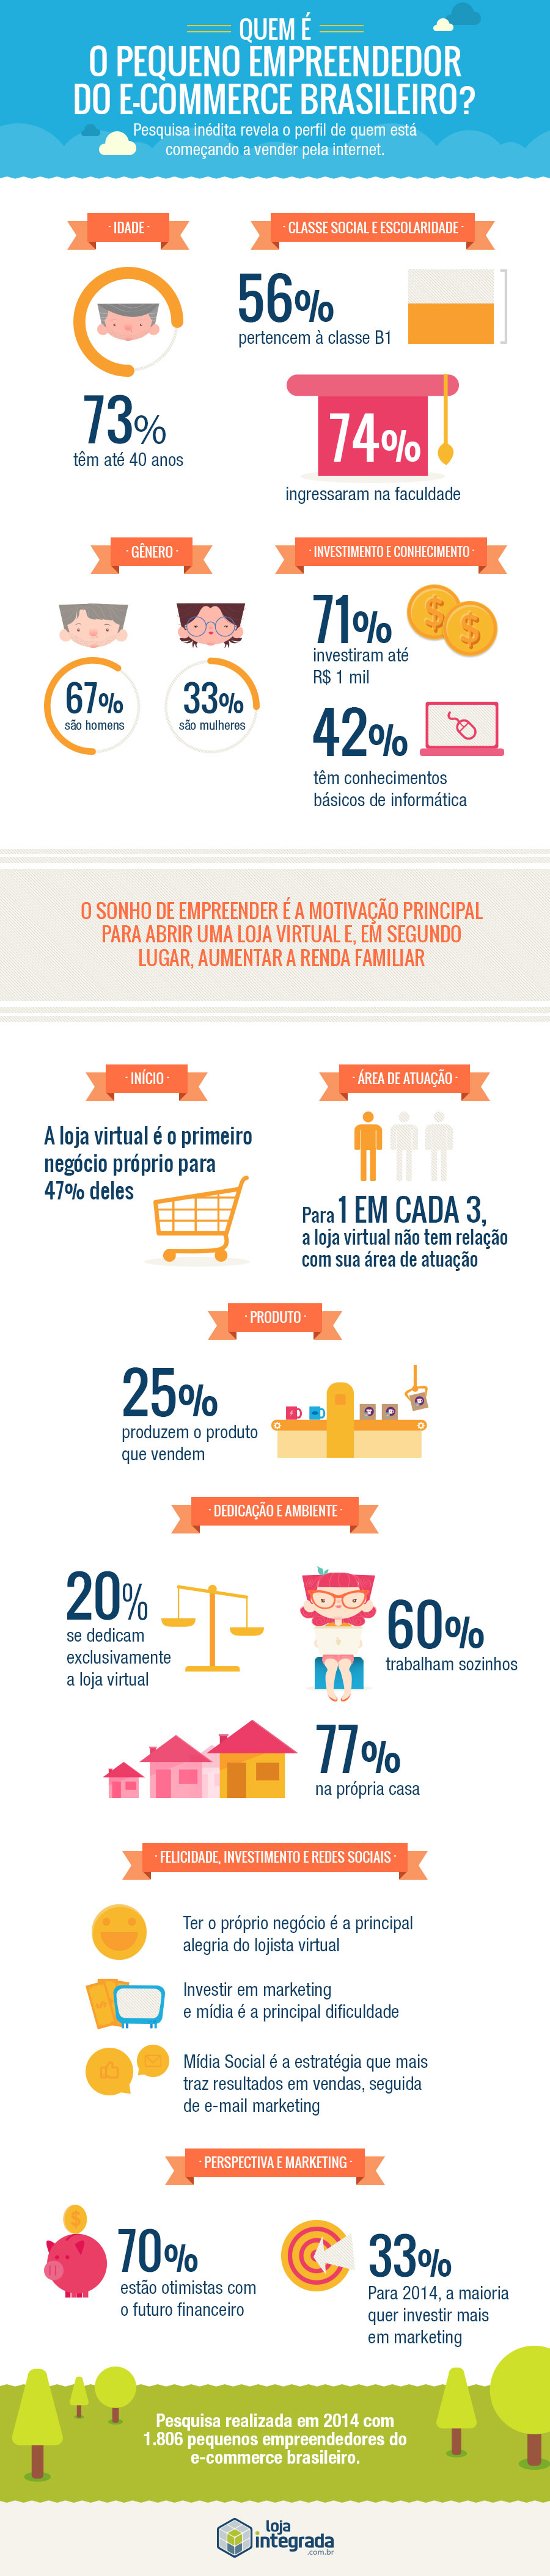 Pesquisa-mostra-quem-são-os-novos-empreendedores-digitais-no-Brasil--pesquisa